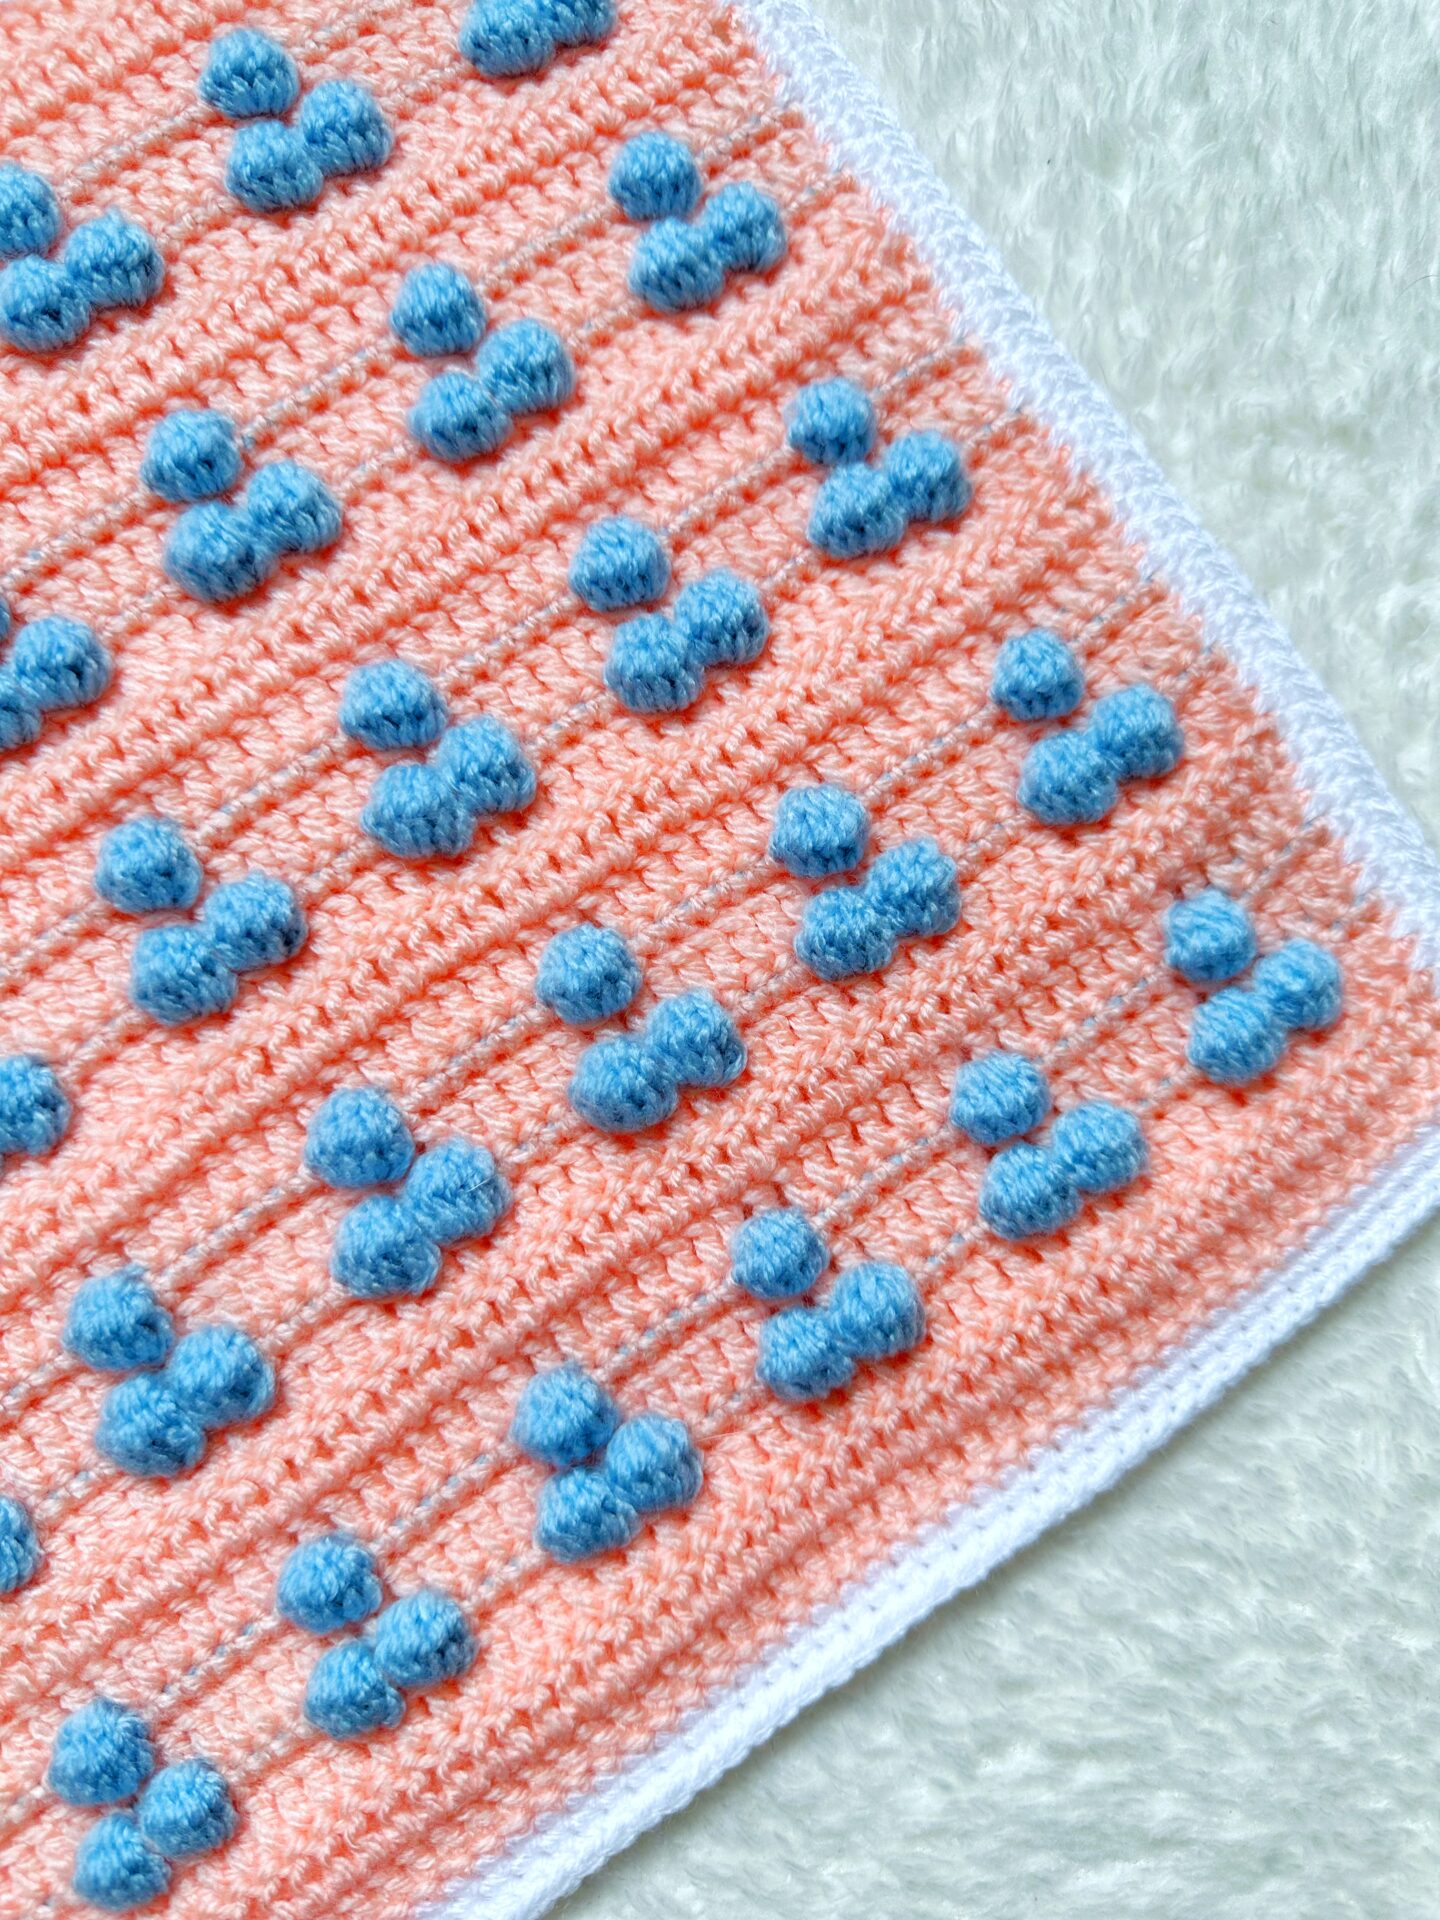 Blossoming Bobble Blanket - Free Crochet Pattern